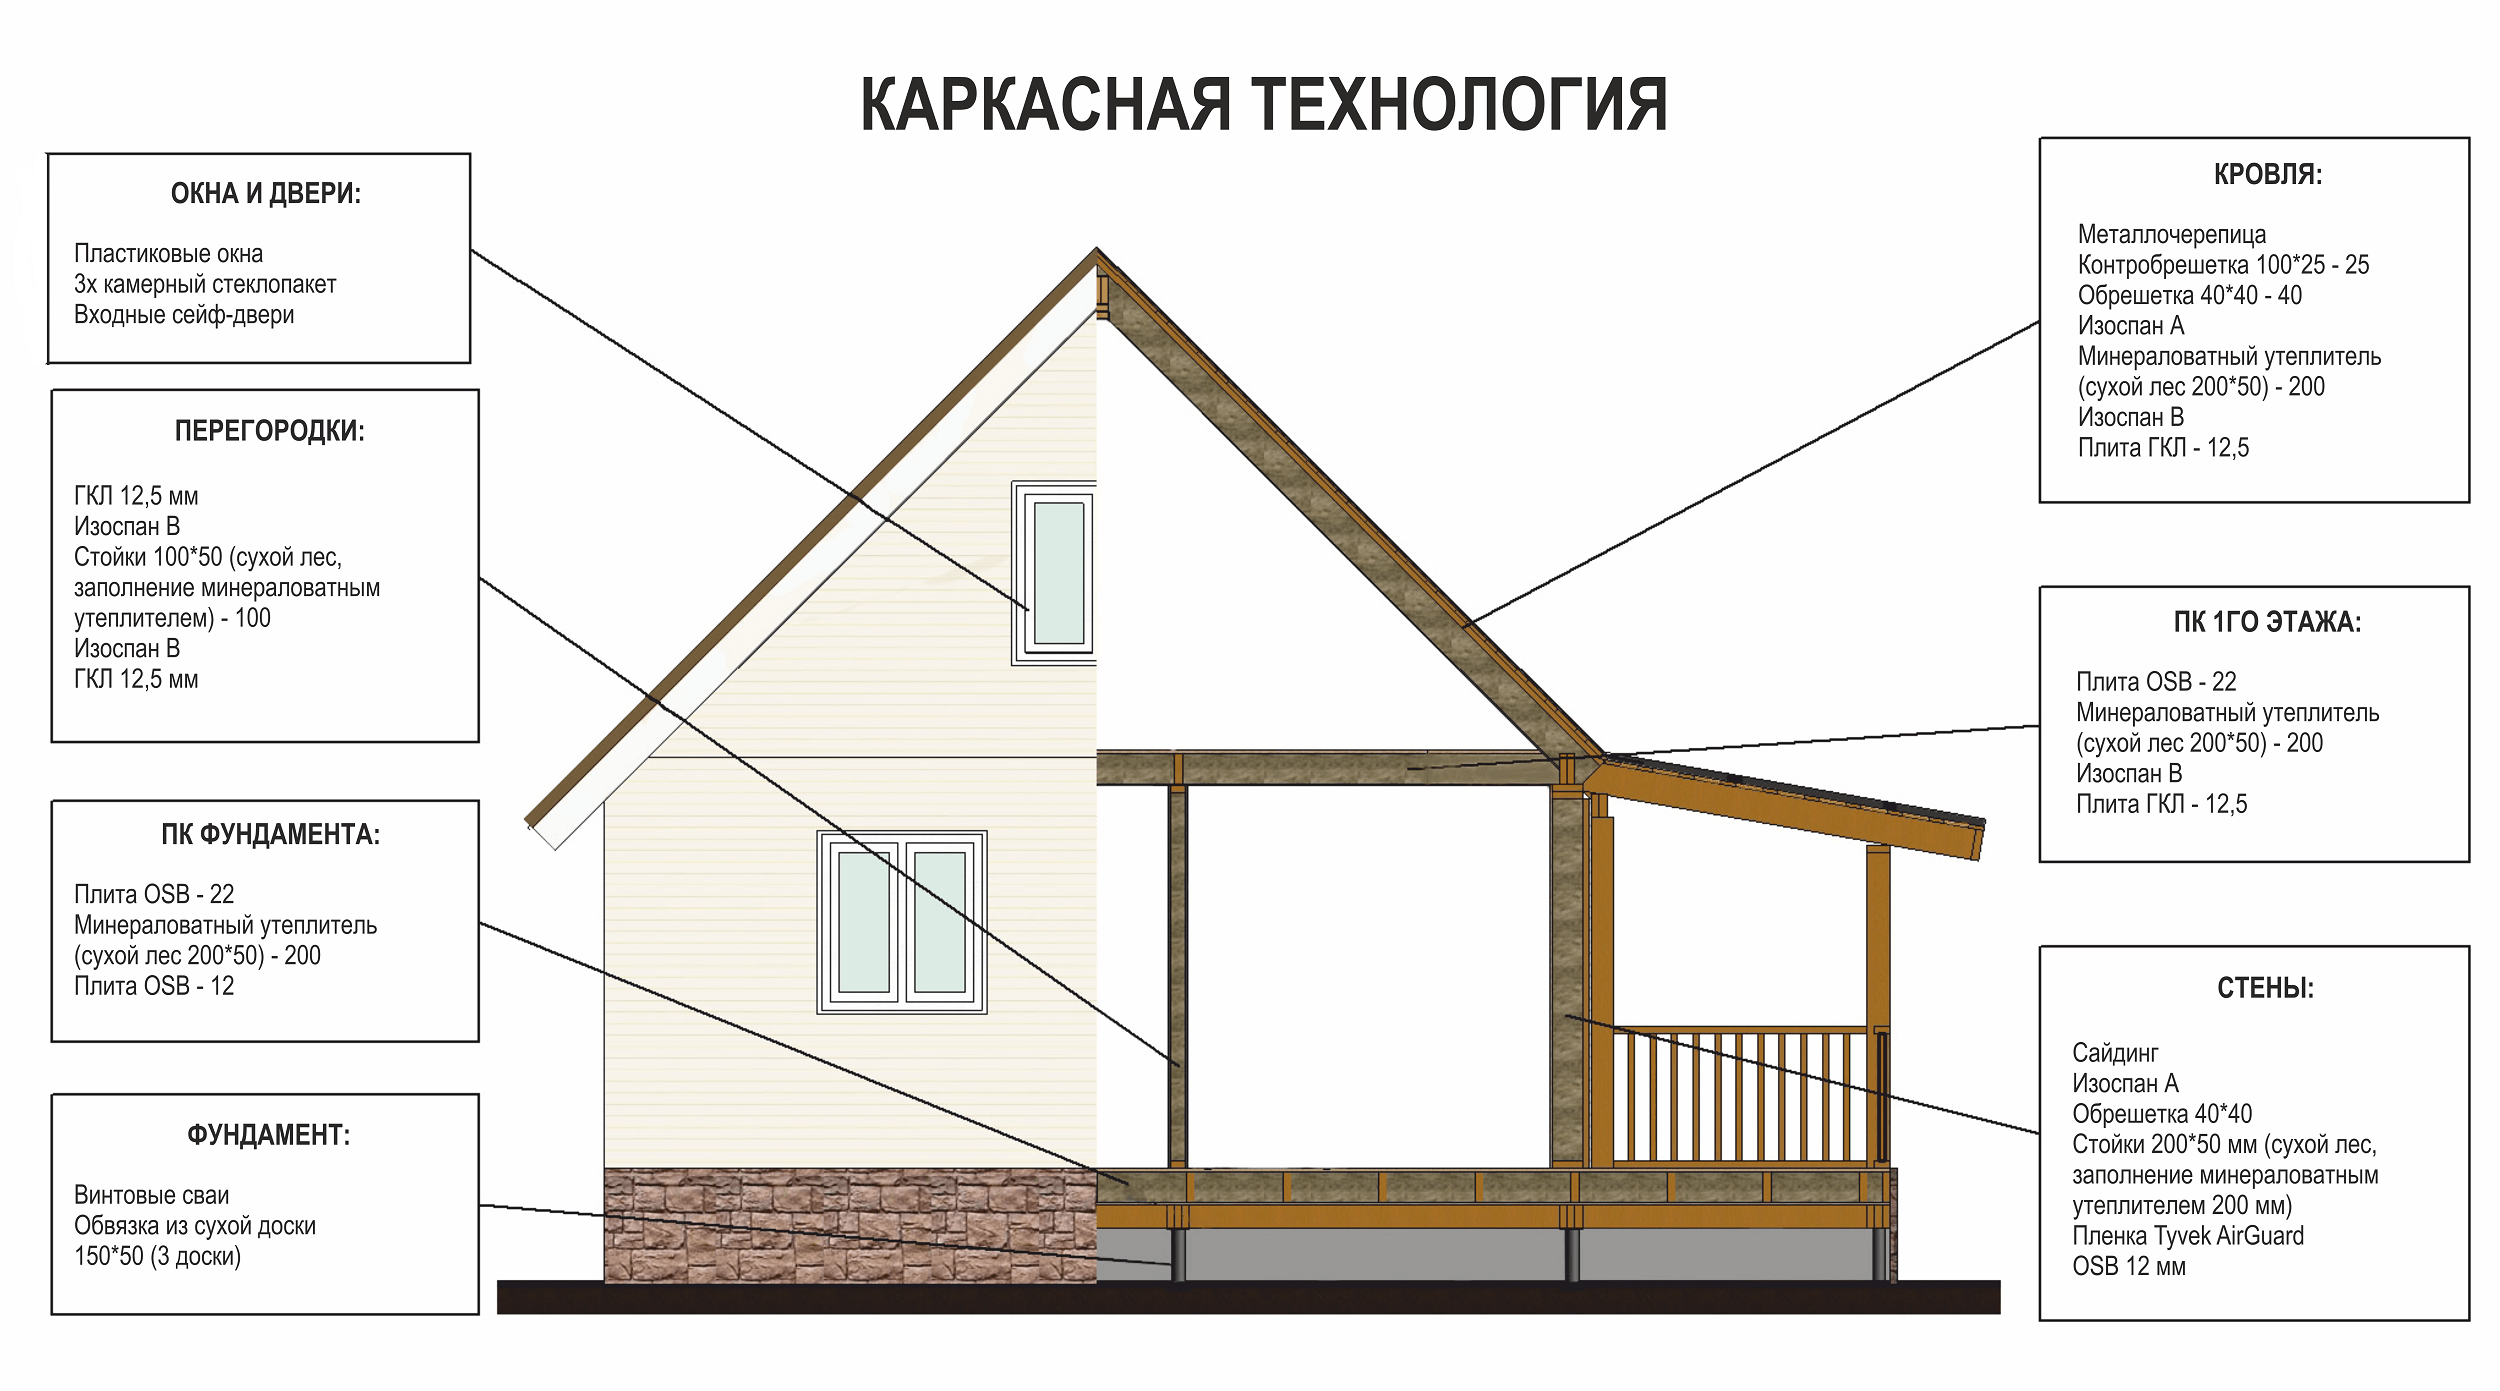 Каркасный дом своими руками: пошаговая инструкция возведения жилища